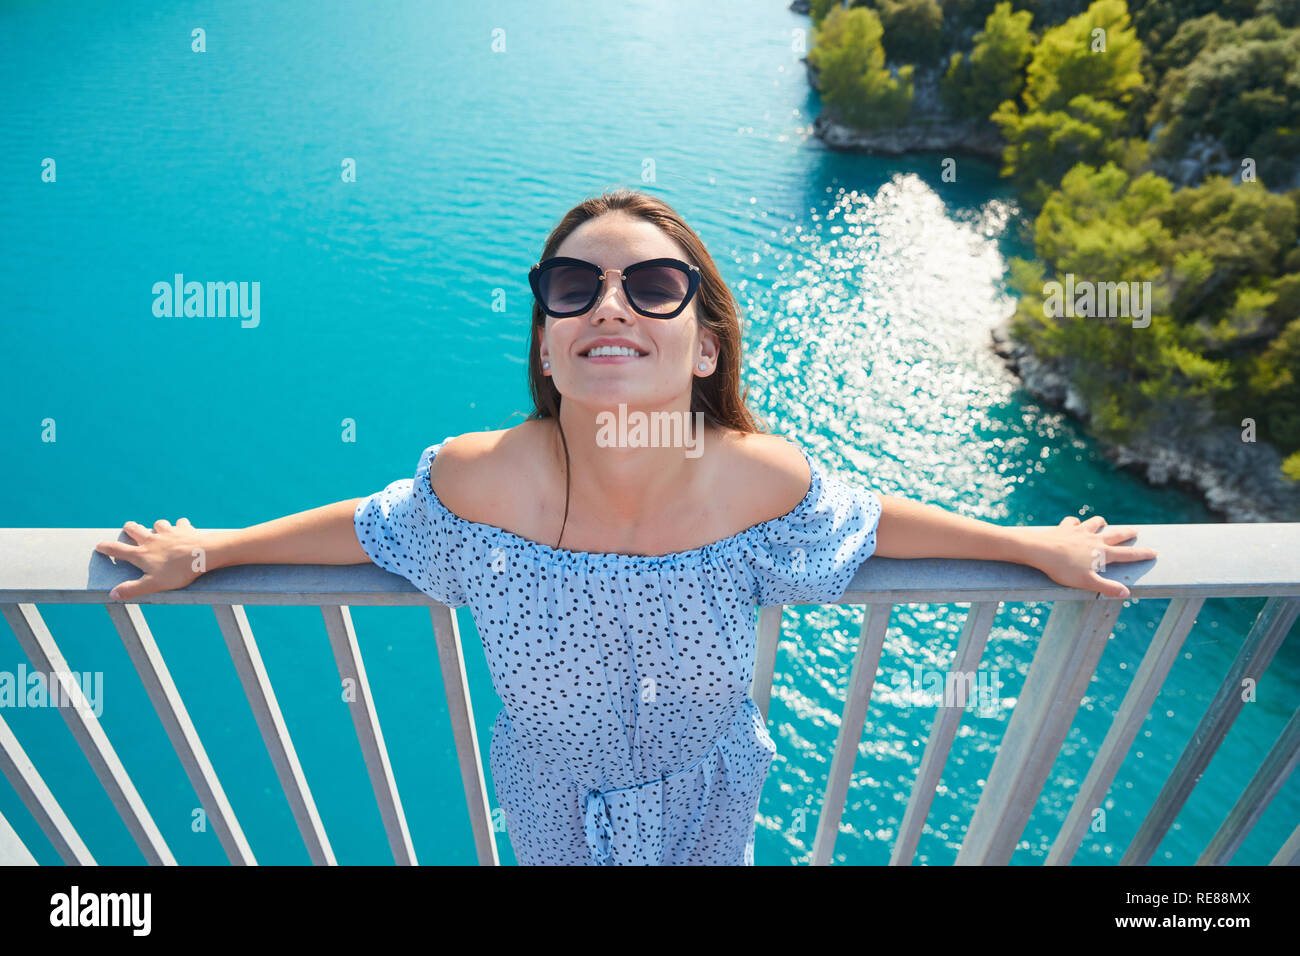 La hermosa chica en un vestido azul y gafas de sol posa sobre el puente, el largo cabello castaño, felices y sonrisas, el agua azul del lago y pendientes Foto de stock